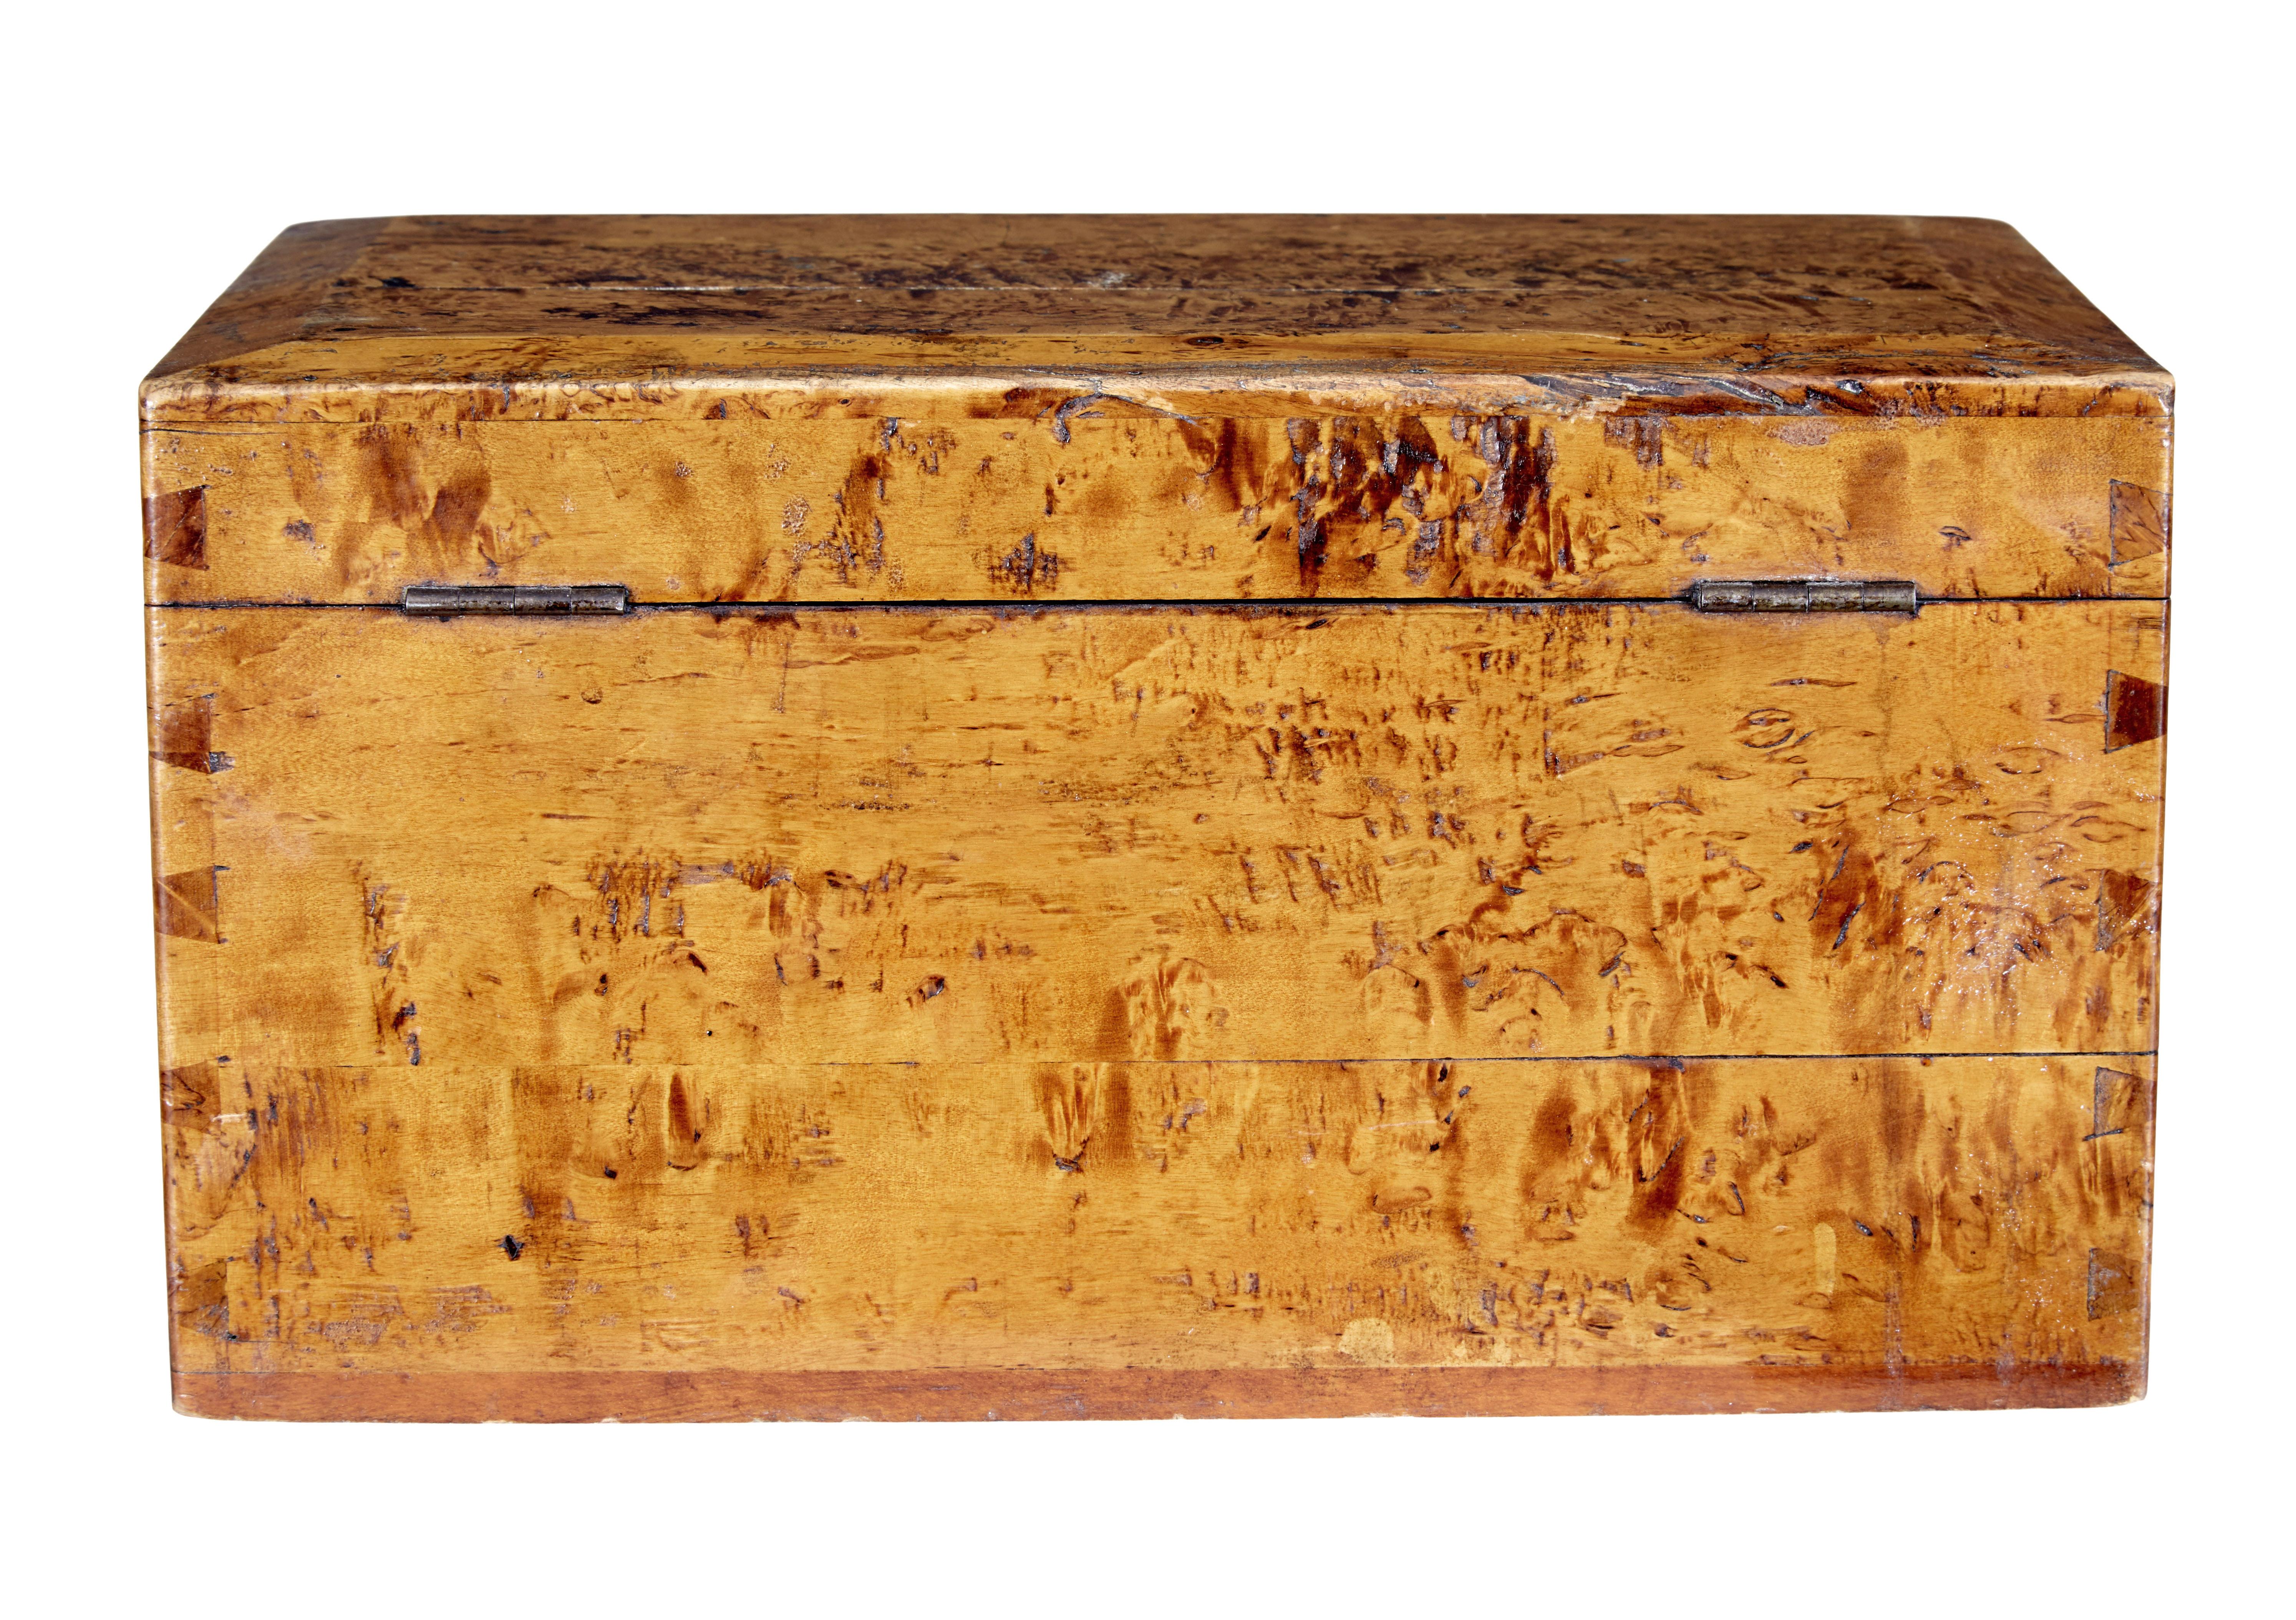 Zuckerdose aus Birkenwurzelholz, 19. Jahrhundert, um 1870.

Ein schönes Stück Geschichte, das zeigt, wie Zucker früher verarbeitet wurde.  Dose aus Birkenwurzelholz mit eingepasstem Innenleben eines aufklappbaren Messers auf Block zum Schneiden von